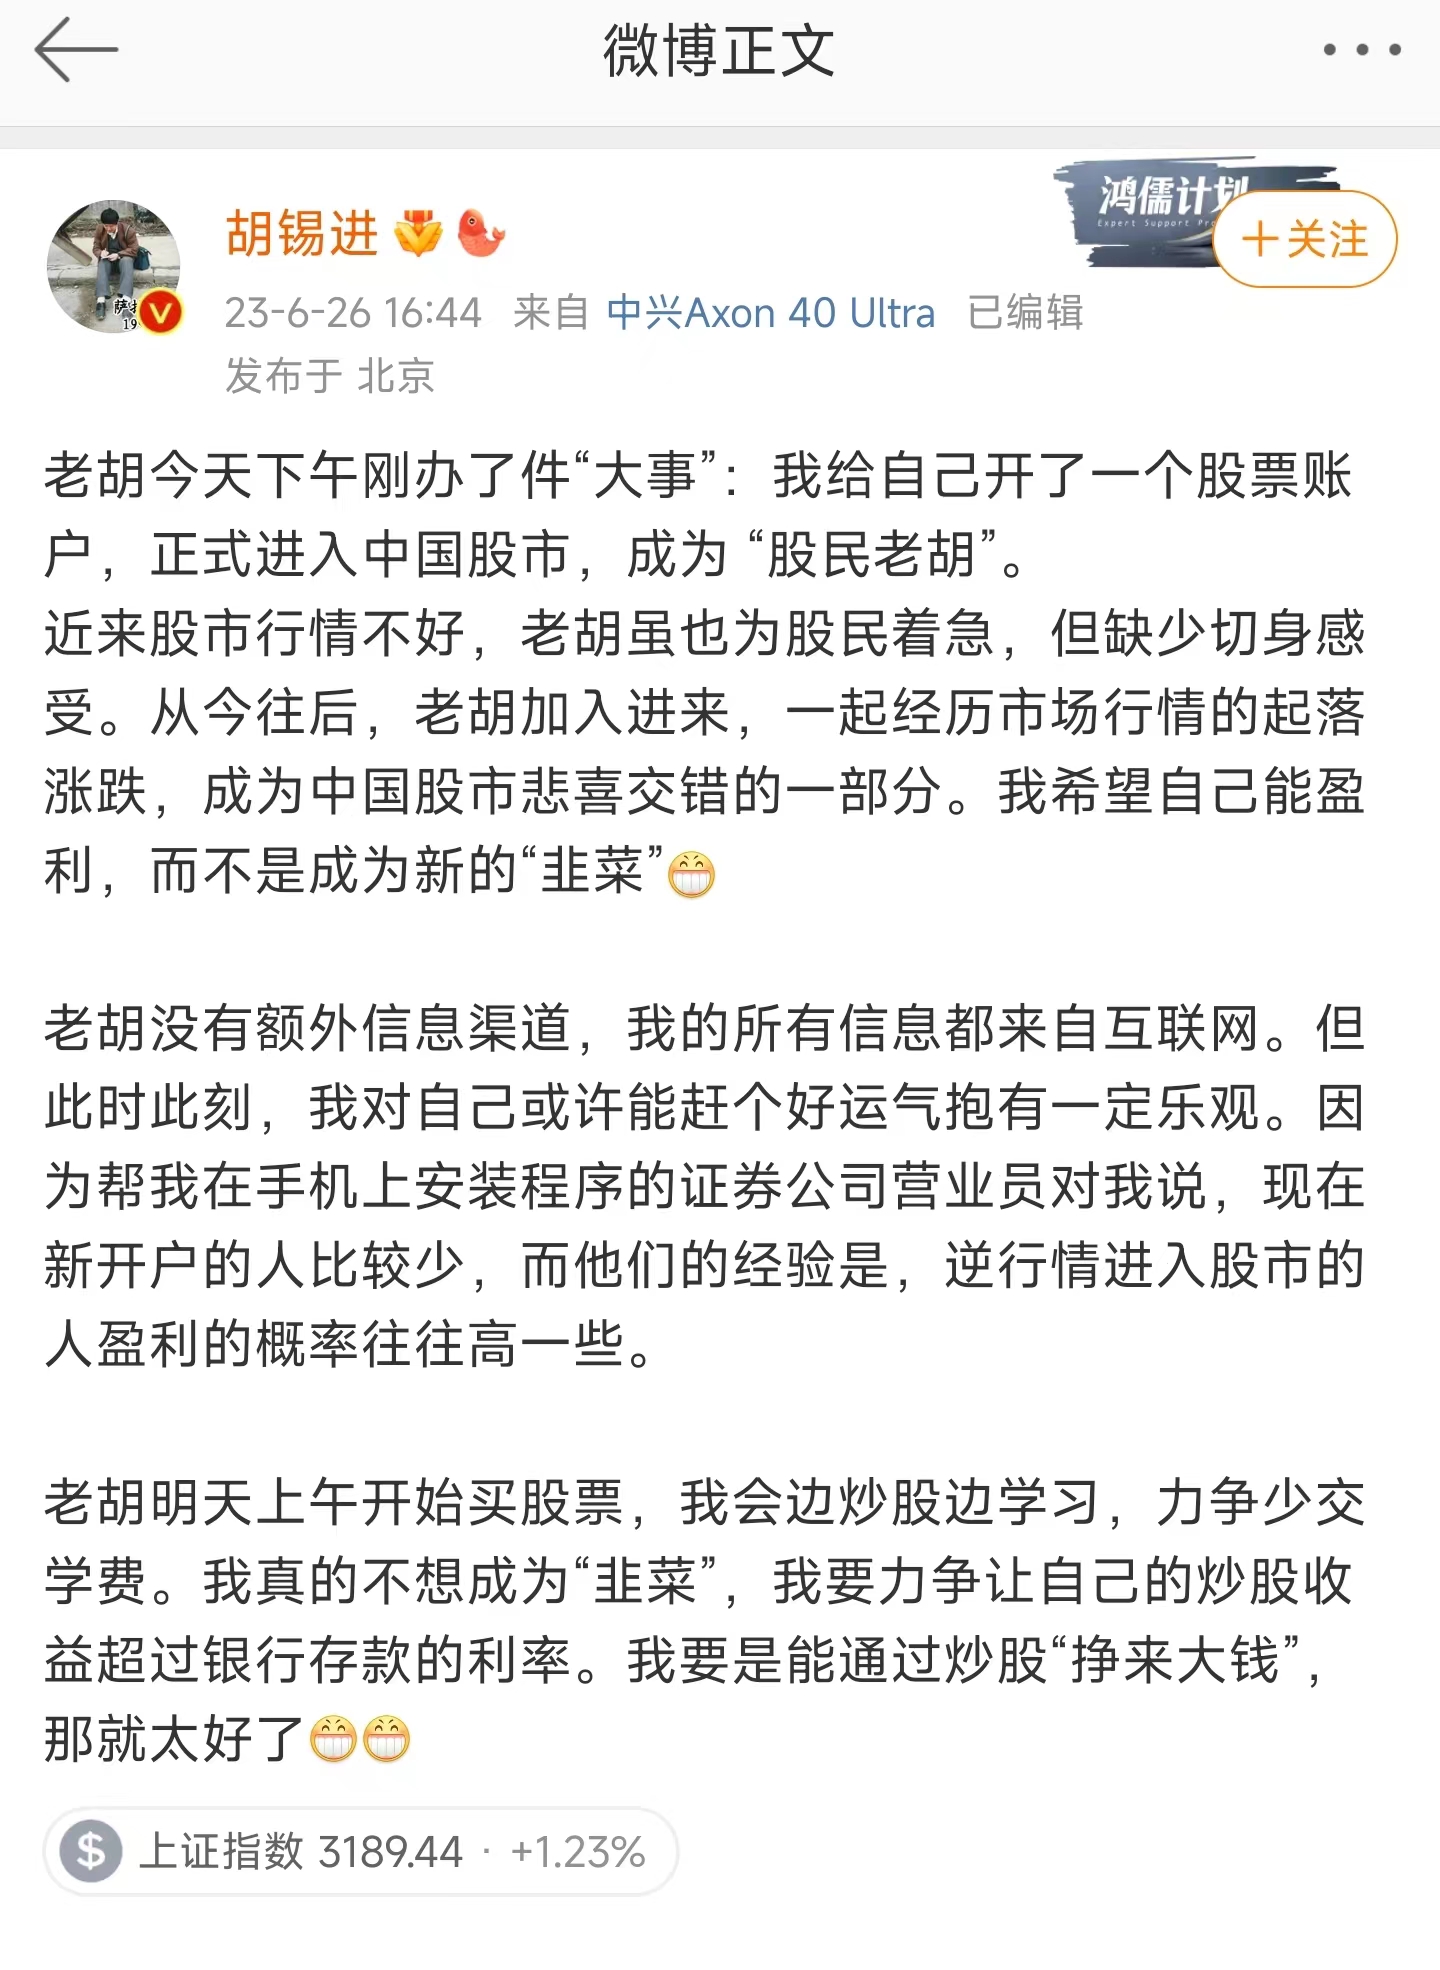 胡錫進突然宣布炒股 當日商業版圖遭曝光 ＊ 阿波羅新聞網